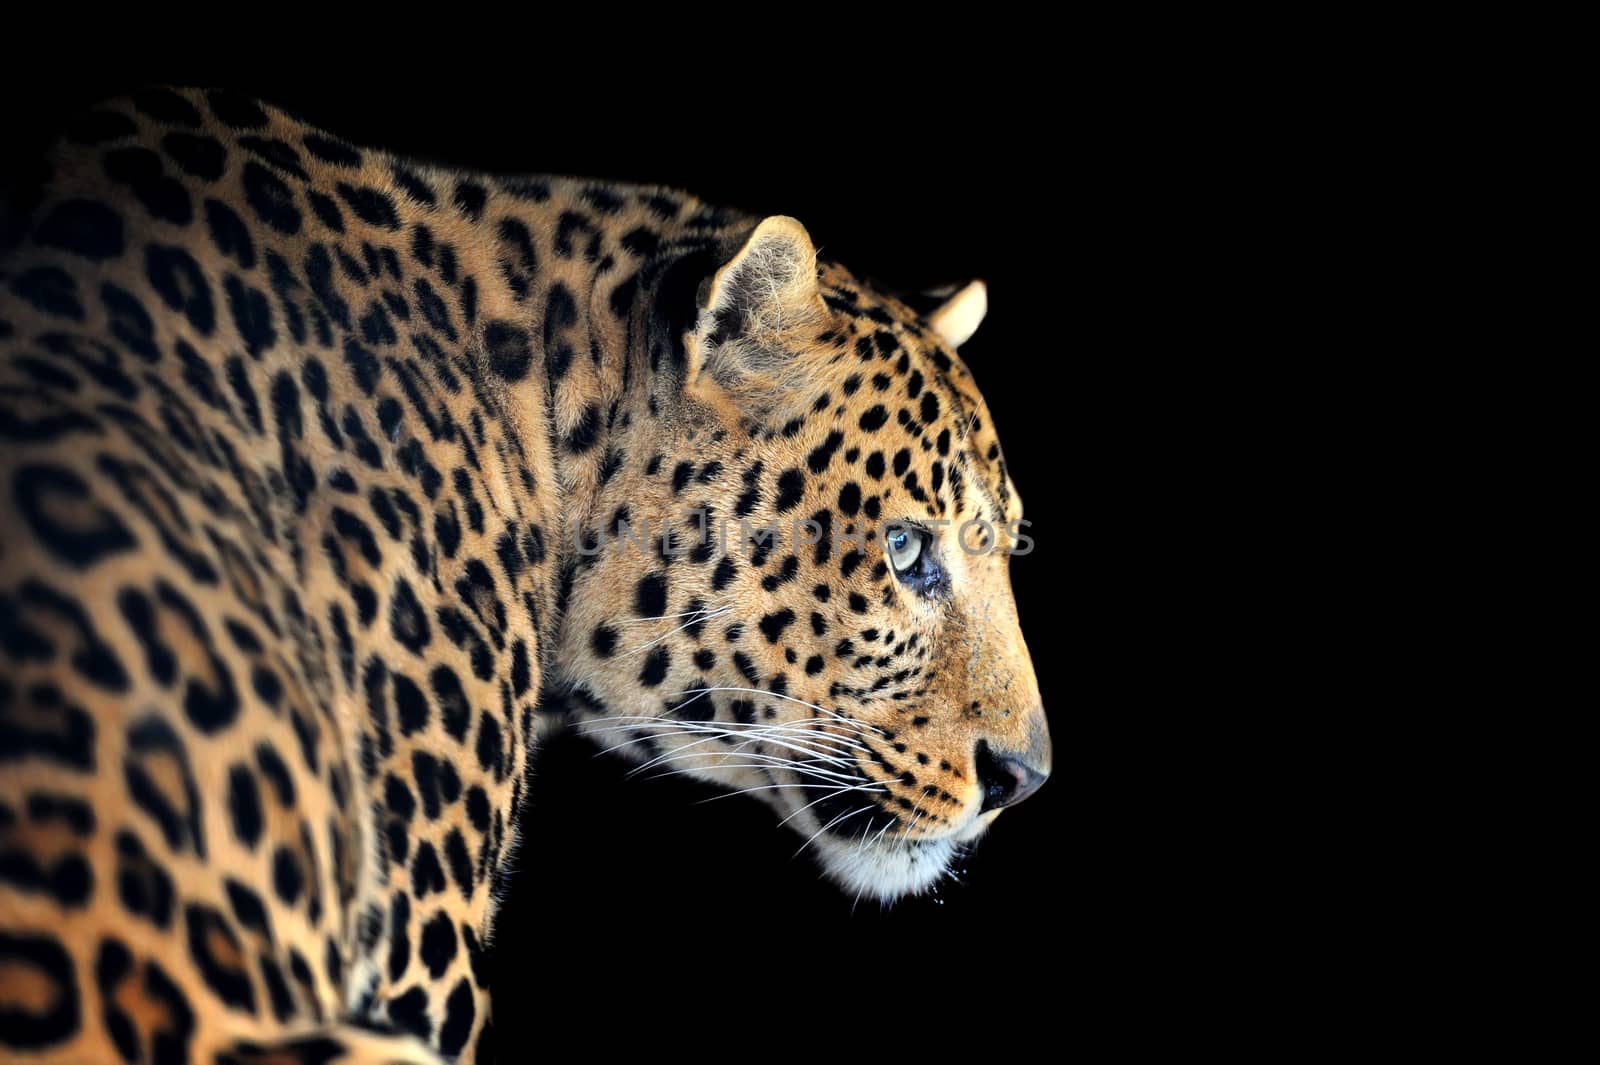 Close-up leopard portrait on dark background